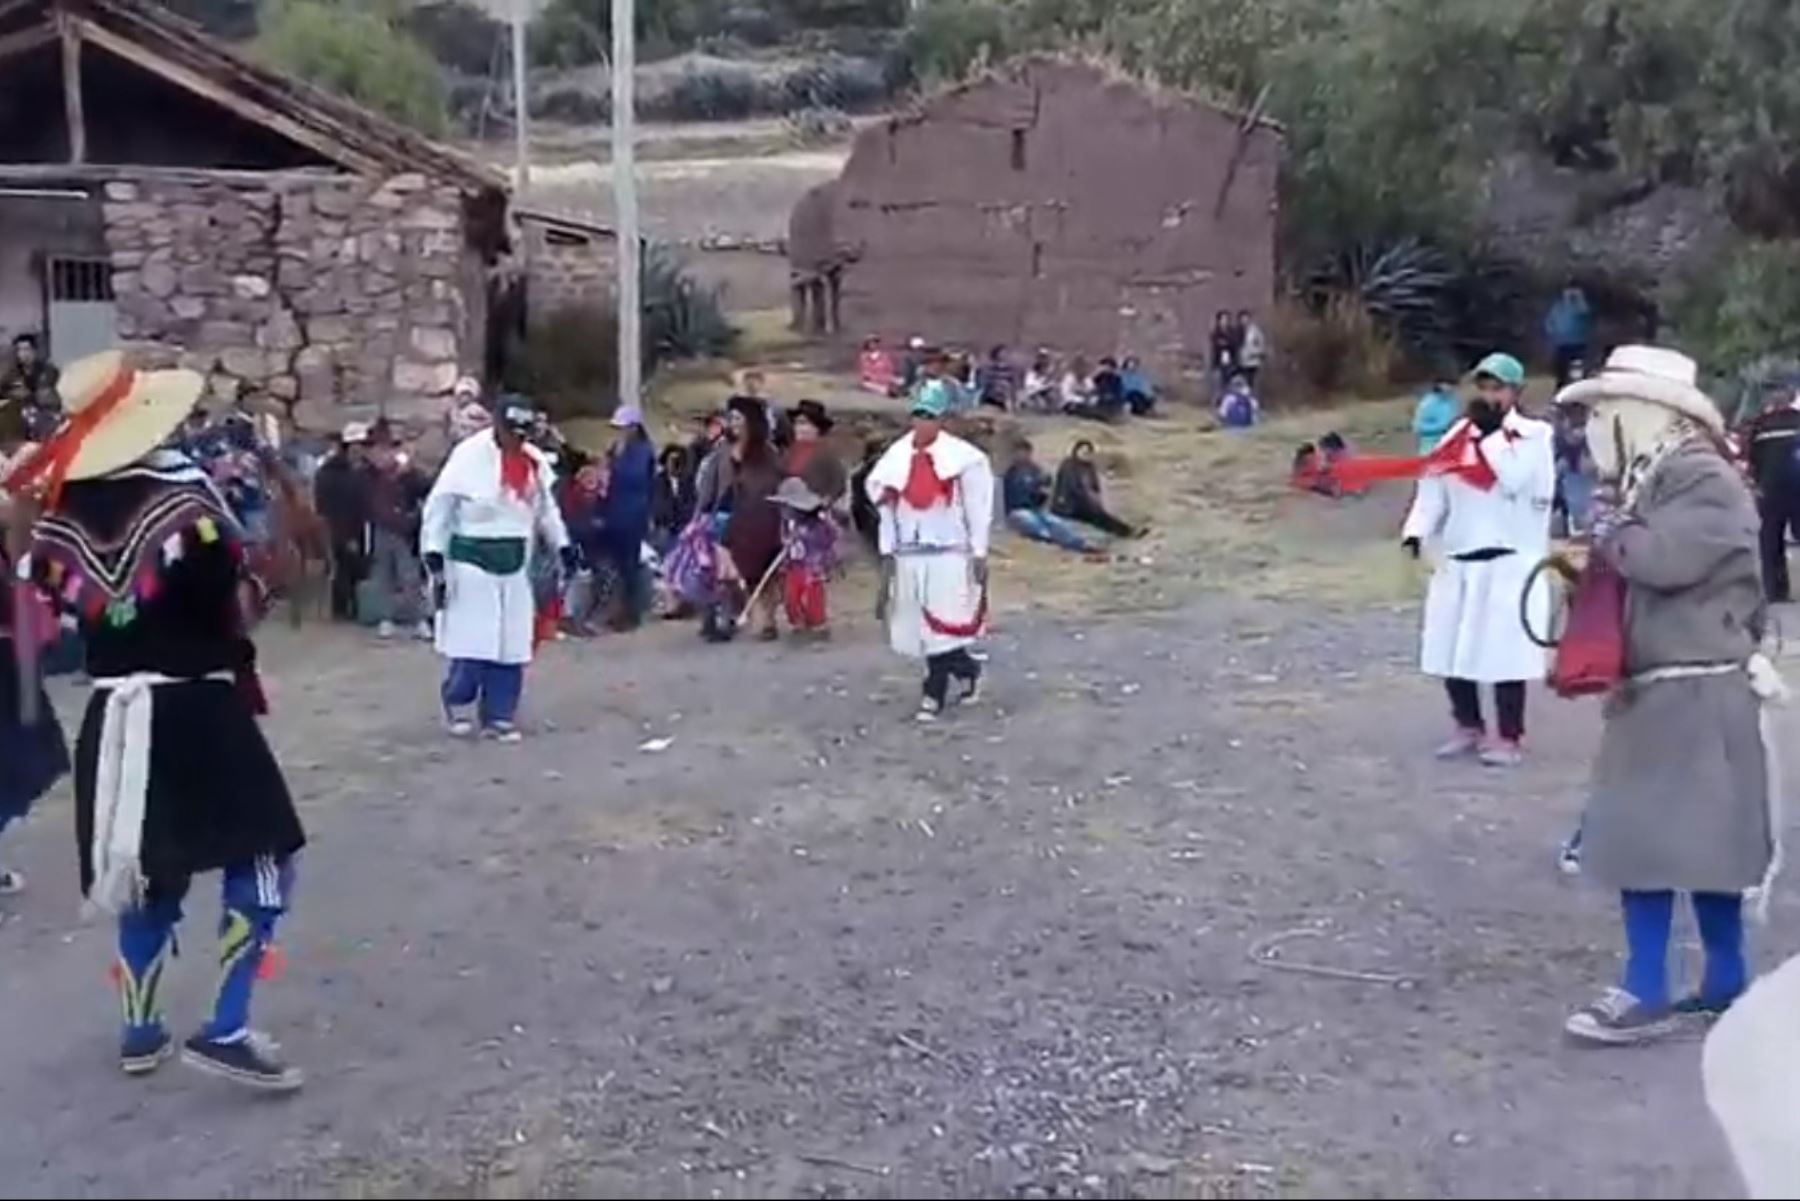 Faena colectiva Yarqui Aspiy de Carcosi, en Huancavelica ya es Patrimonio Cultural de la Nación.